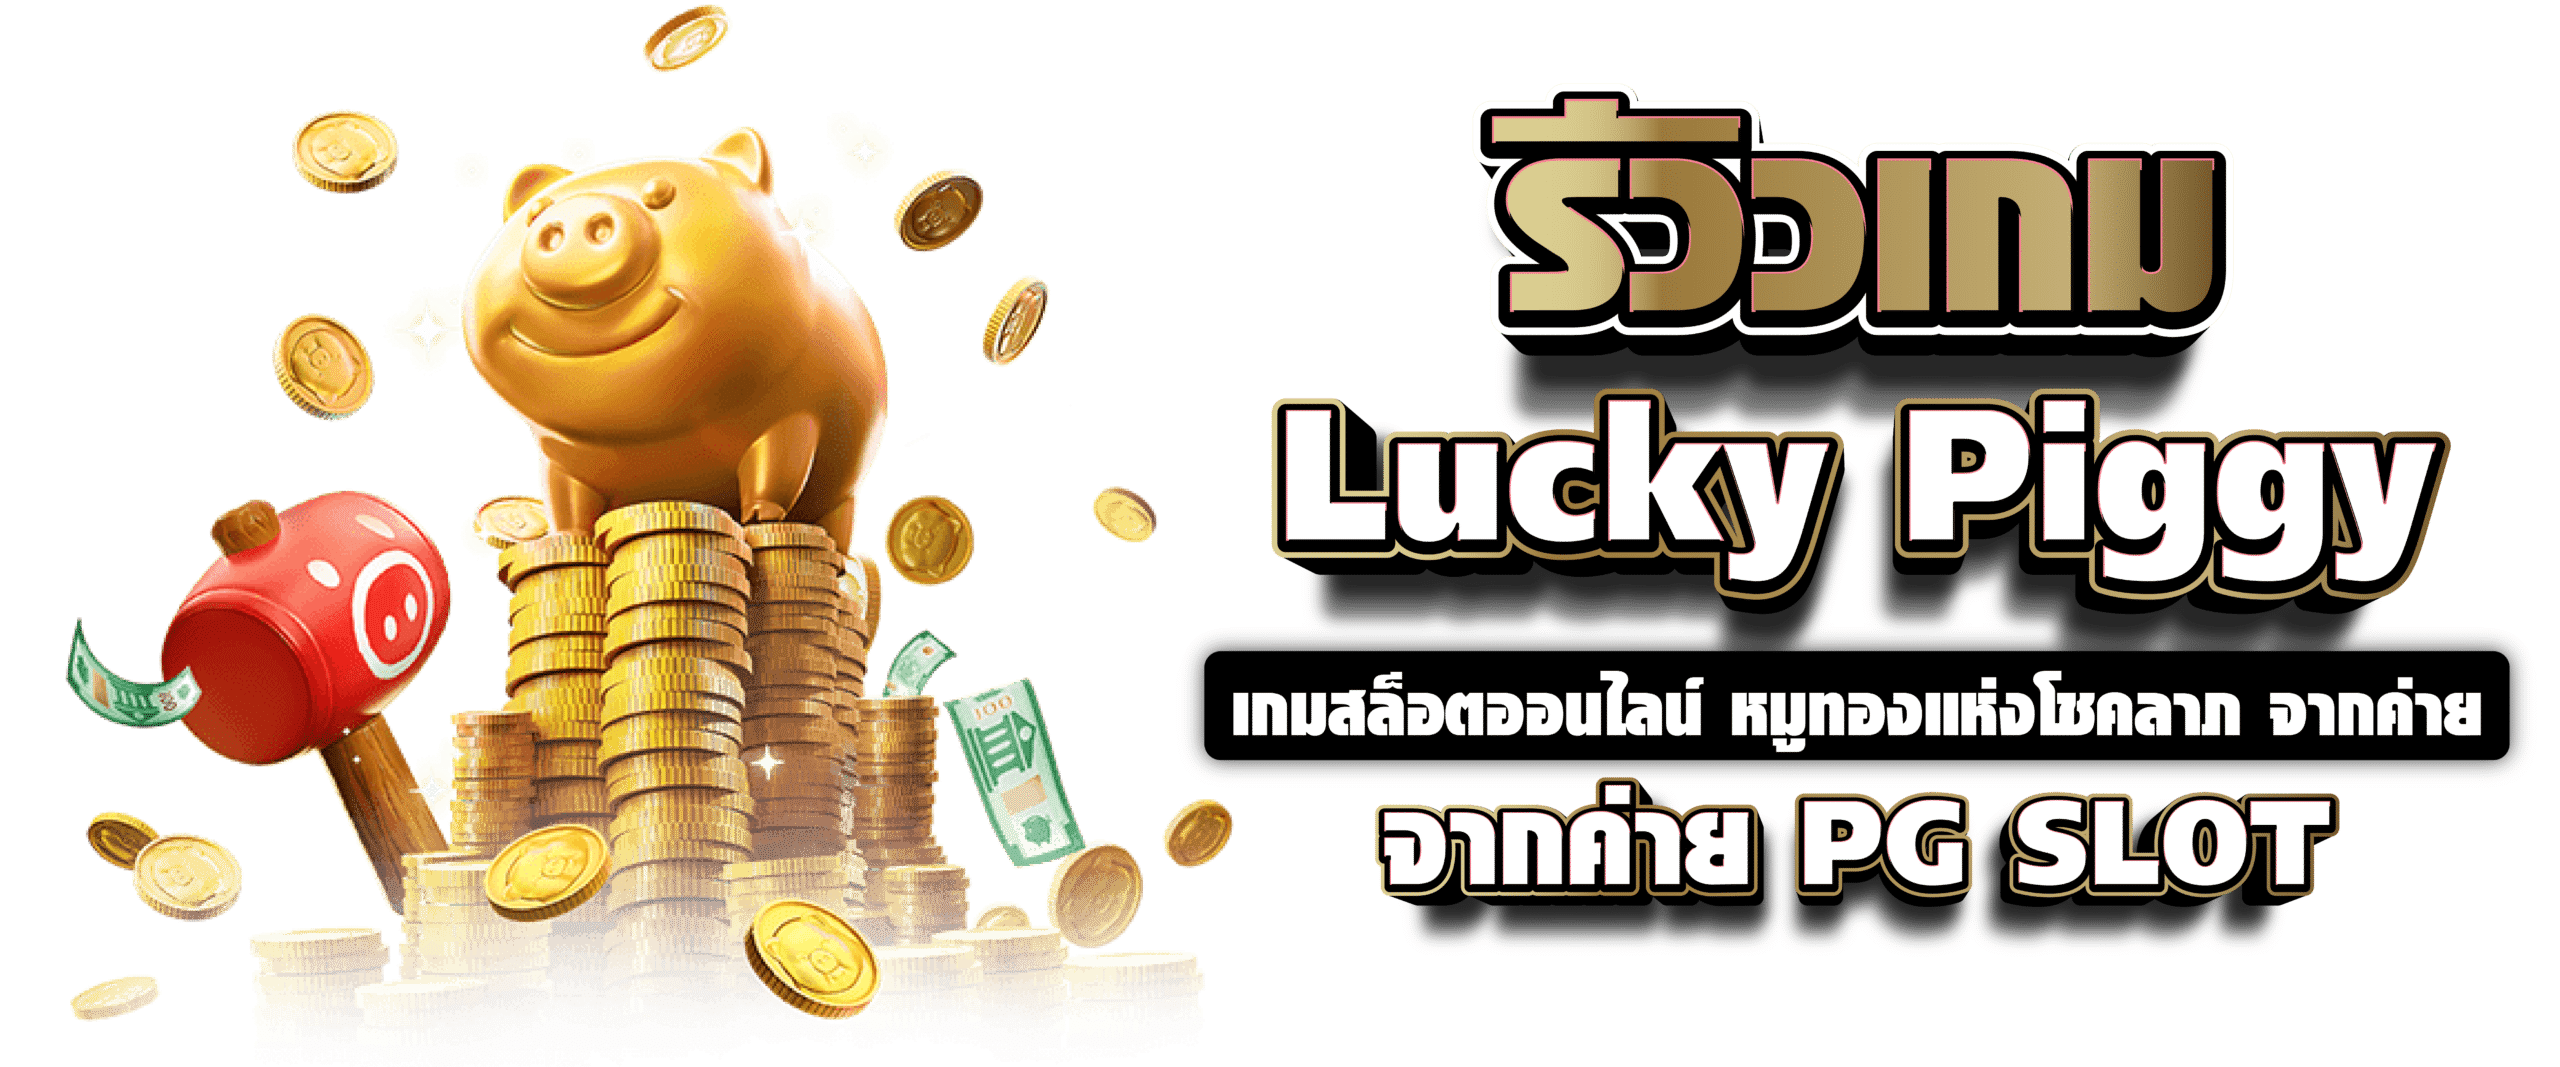 รีวิวเกม Lucky Piggy เกมสล็อตออนไลน์ หมูทองแห่งโชคลาภ จากค่าย PG SLOT